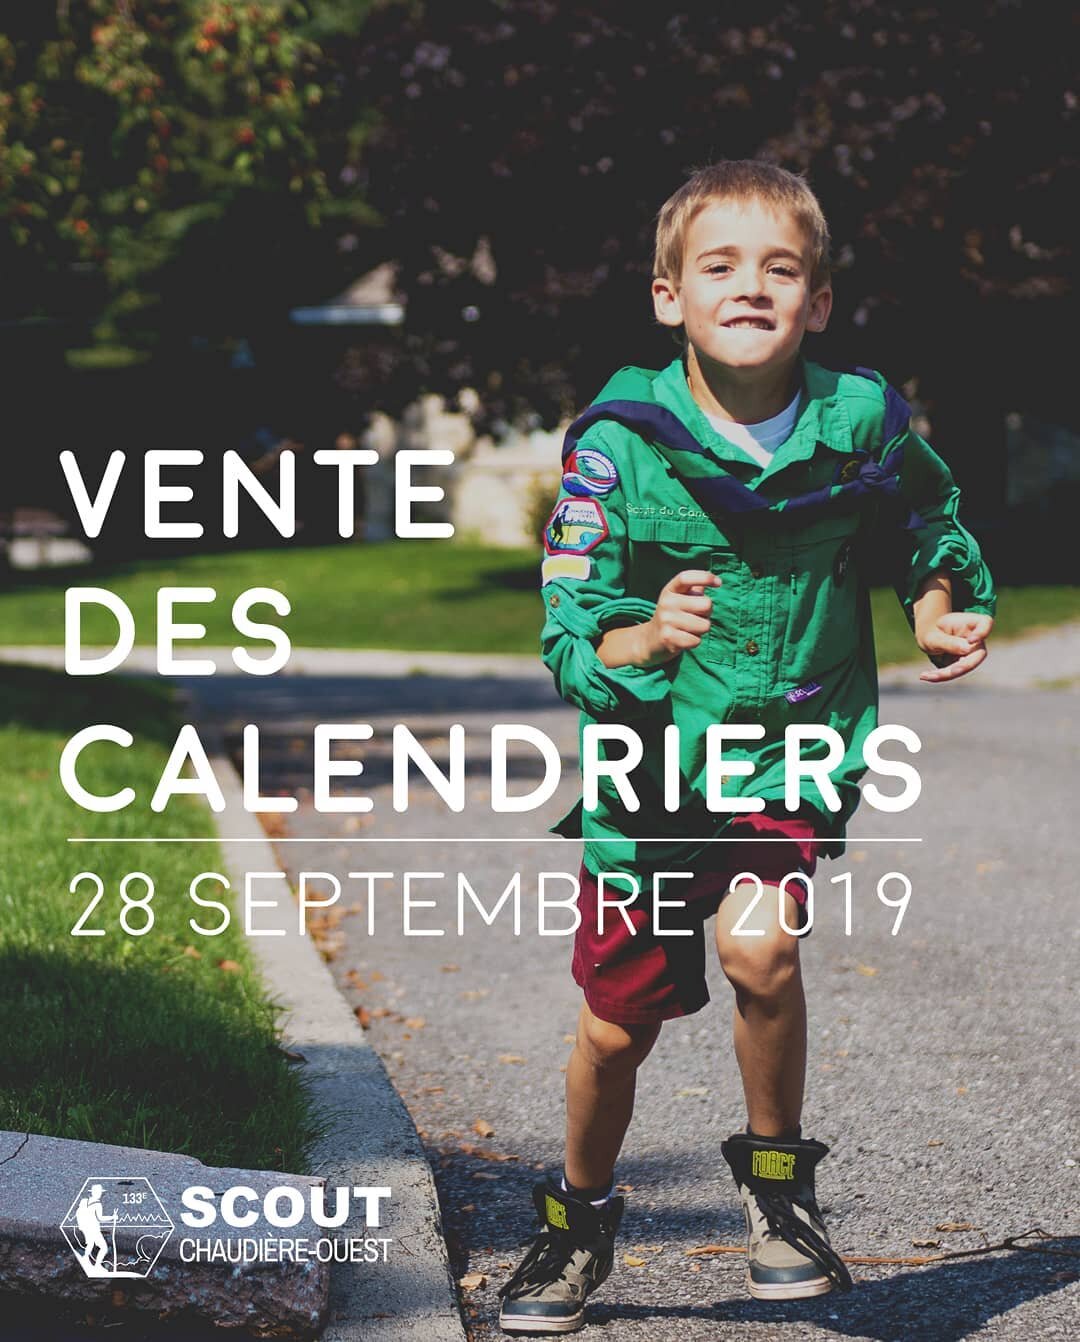 👉Notre vente des calendriers scouts pour l'ann&eacute;e 2020 aura lieu ce samedi 28 septembre. 👈 Nous sillonnerons les rues des secteurs Saint-Nicolas et Saint-R&eacute;dempteur, soyez donc pr&ecirc;ts &agrave; nous accueillir en ouvrait vos portes